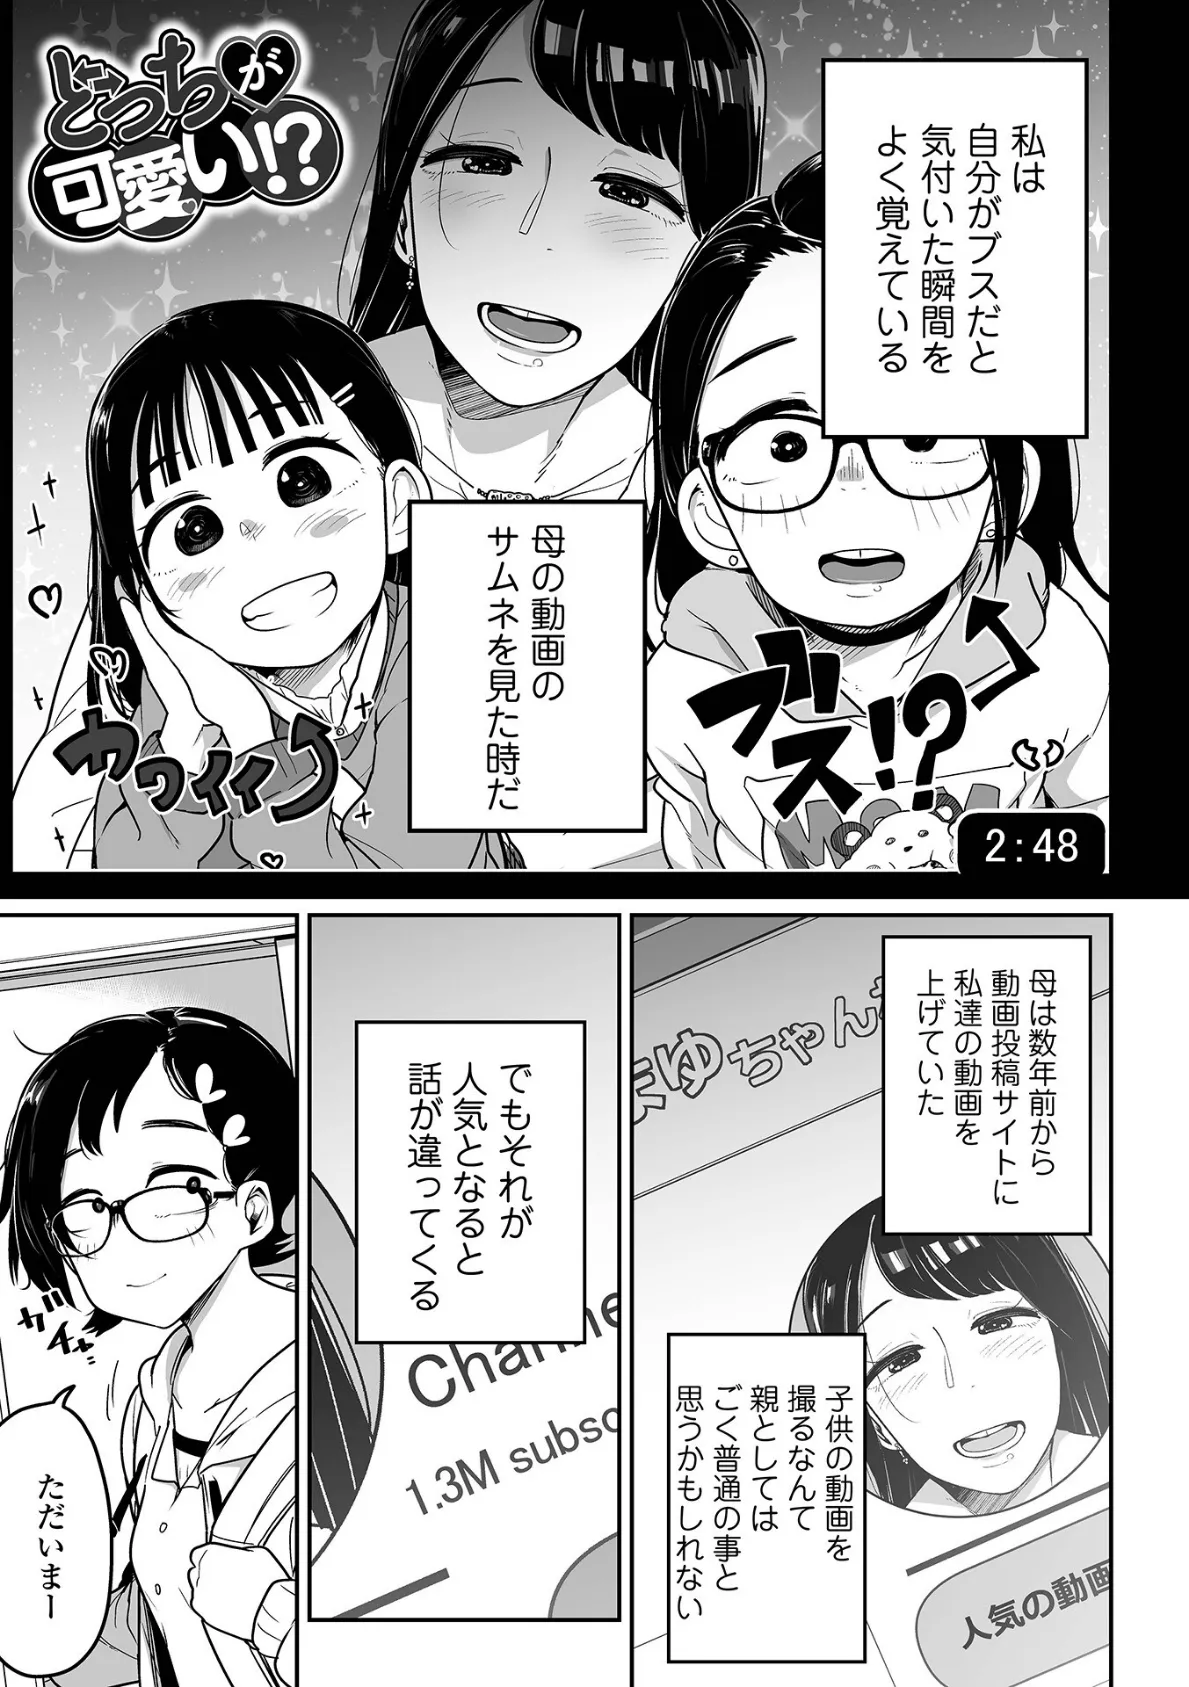 メスガキ vs ワナビおじさんハーフ版 15ページ